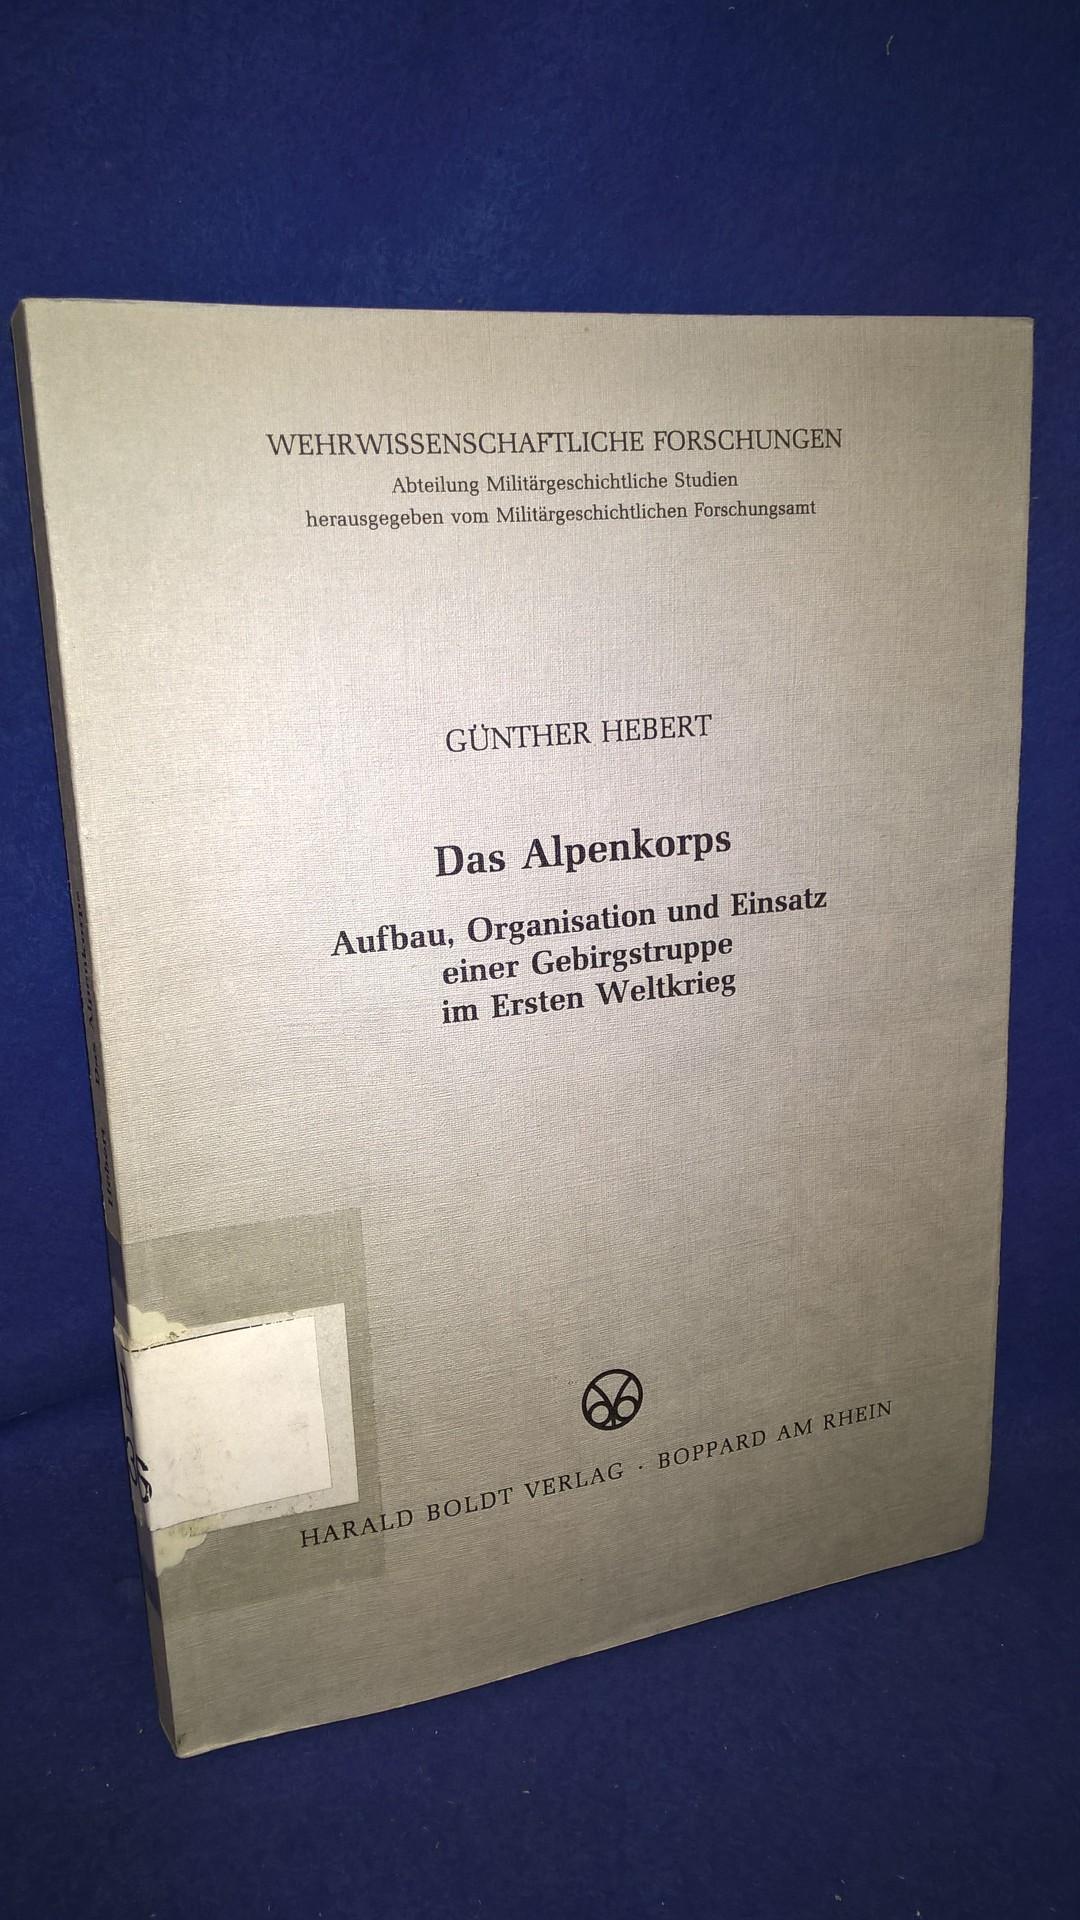 Das Alpenkorps. Aufbau, Organisation und Einsatz einer Gebirgstruppe im Ersten Weltkrieg